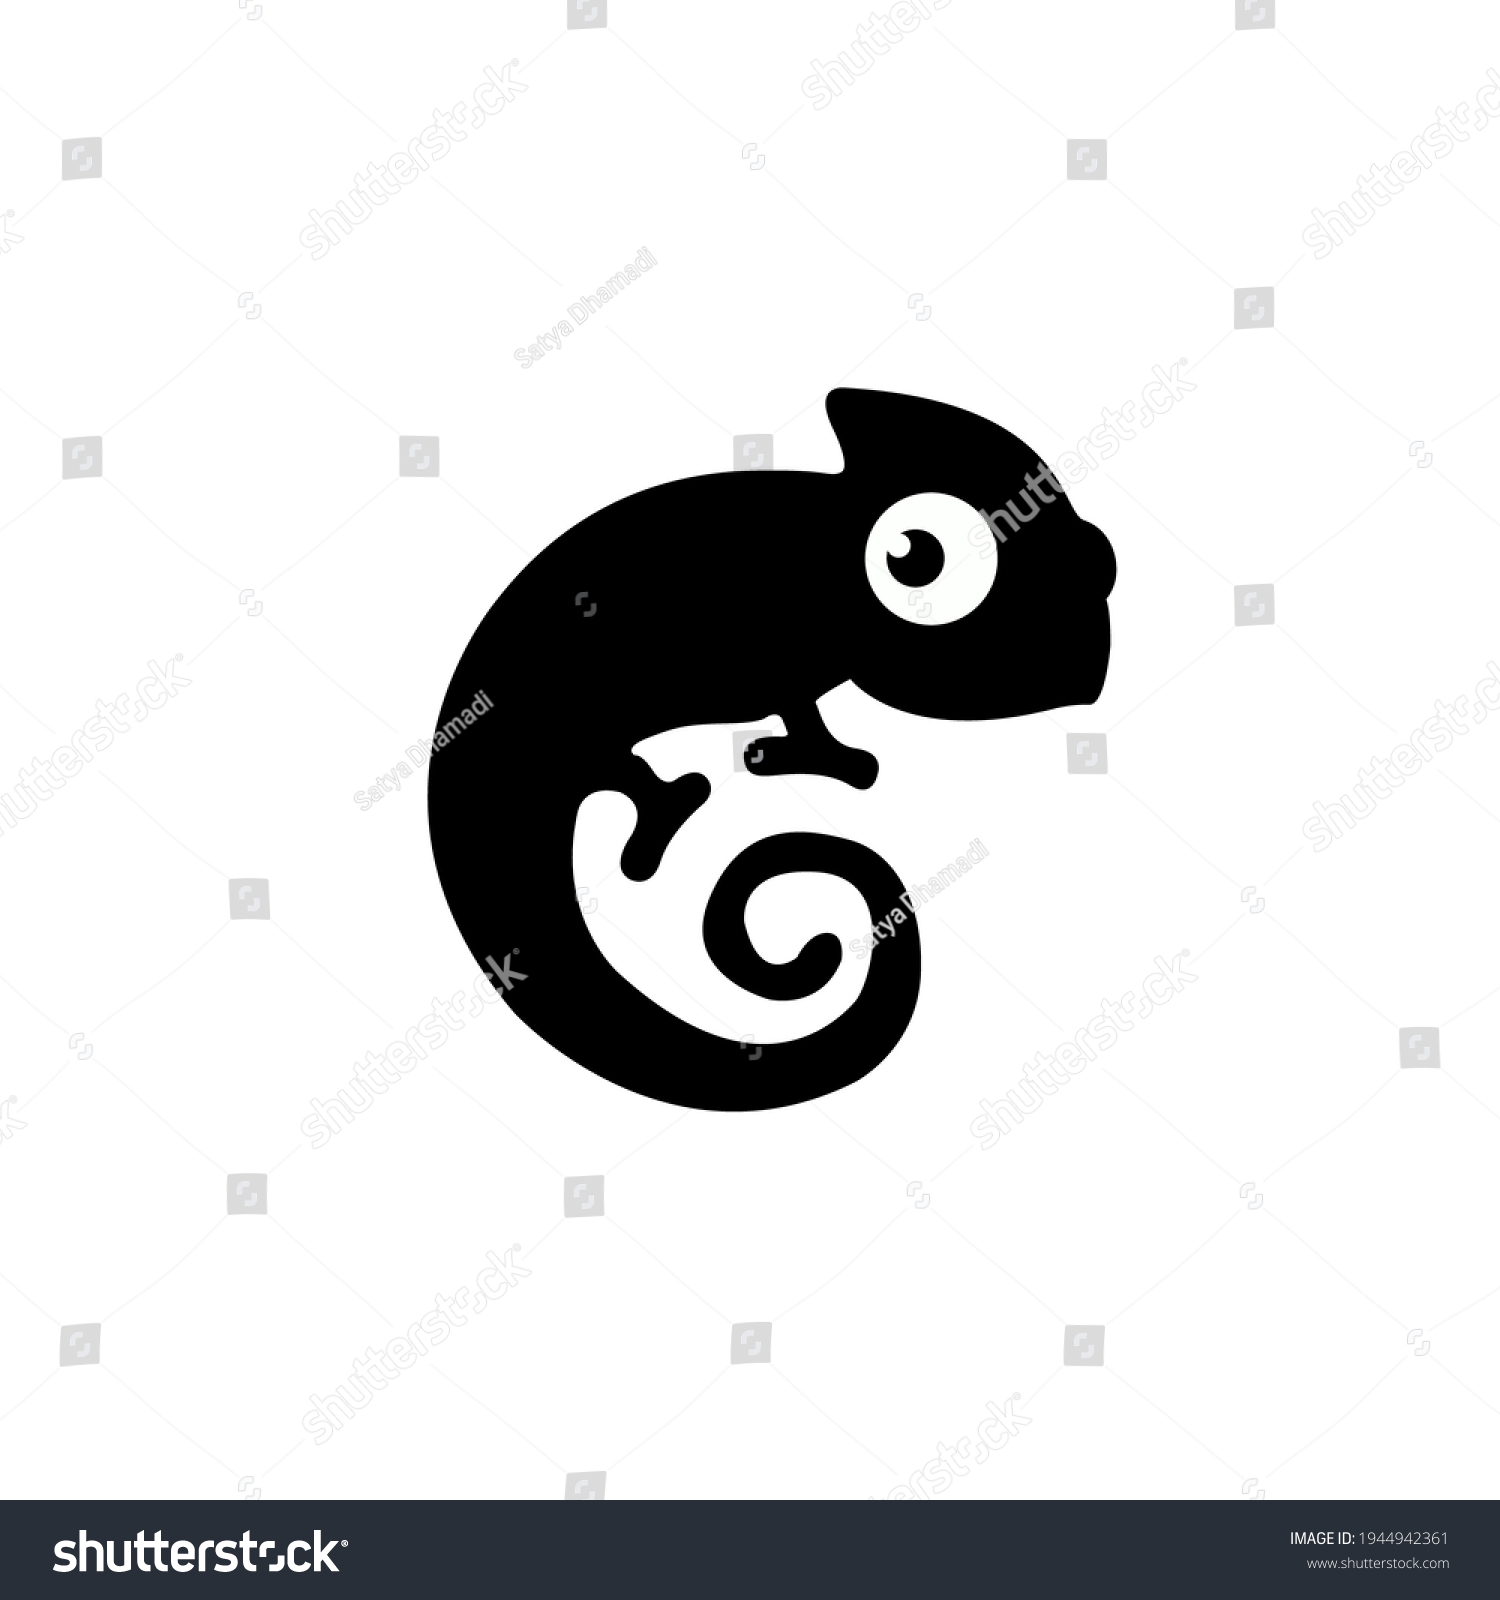 SVG of Chameleon silhouette. Chameleon black sign isolated on white background. Chameleon Vector illustration svg